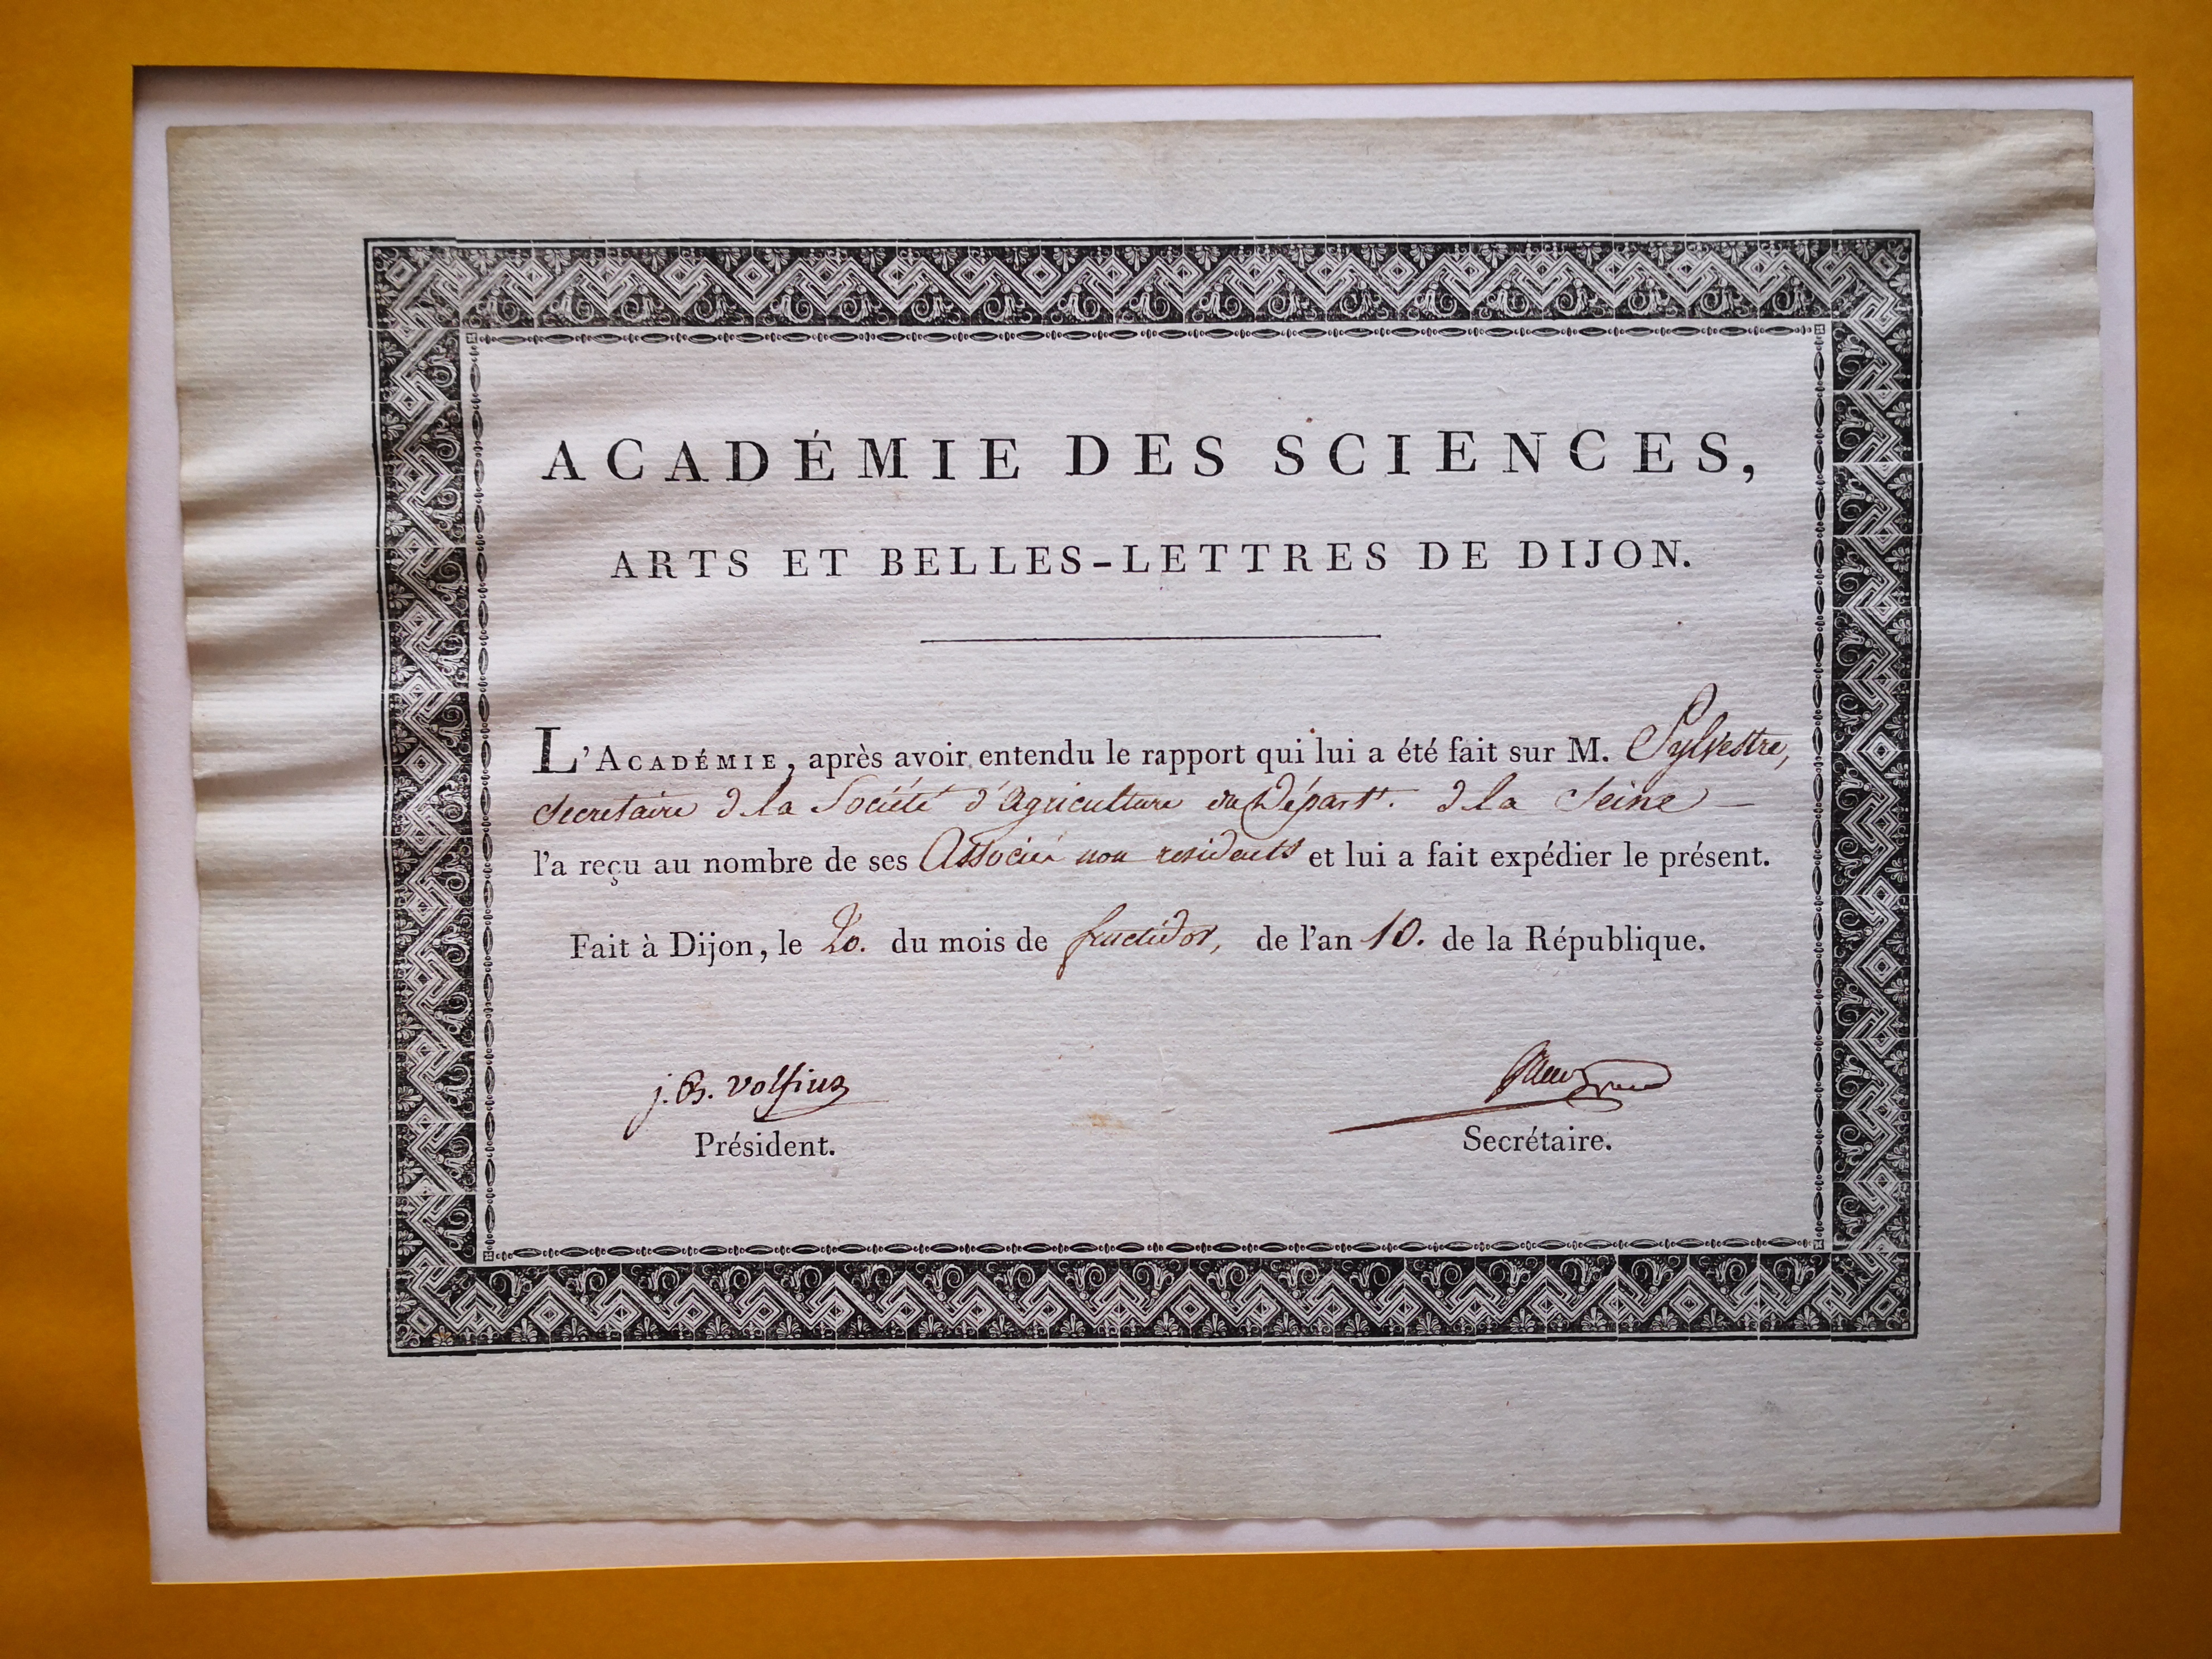  Diplôme d'associé résident de l'Académie des Sciences, Arts et Belles Lettres de Dijon décerné à Augustin-François de Silvestre - Document 1